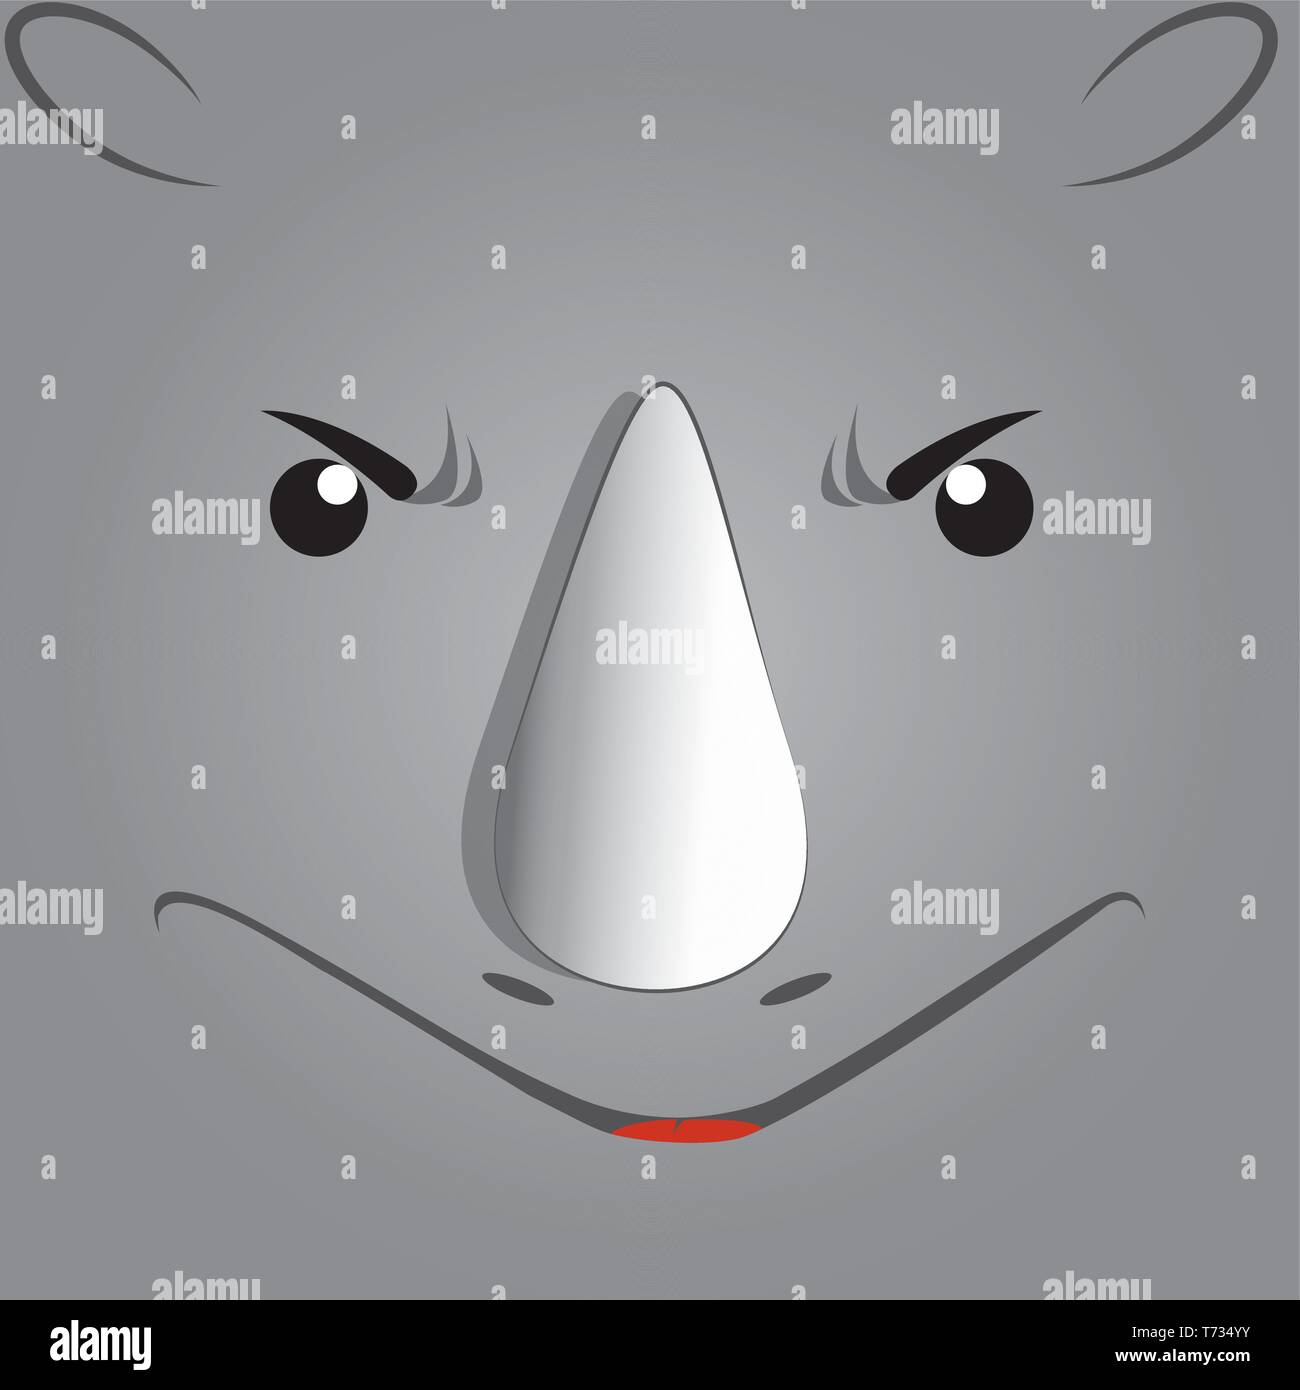 Karikatur von einem niedlichen rhino Gesicht. Stock Vektor